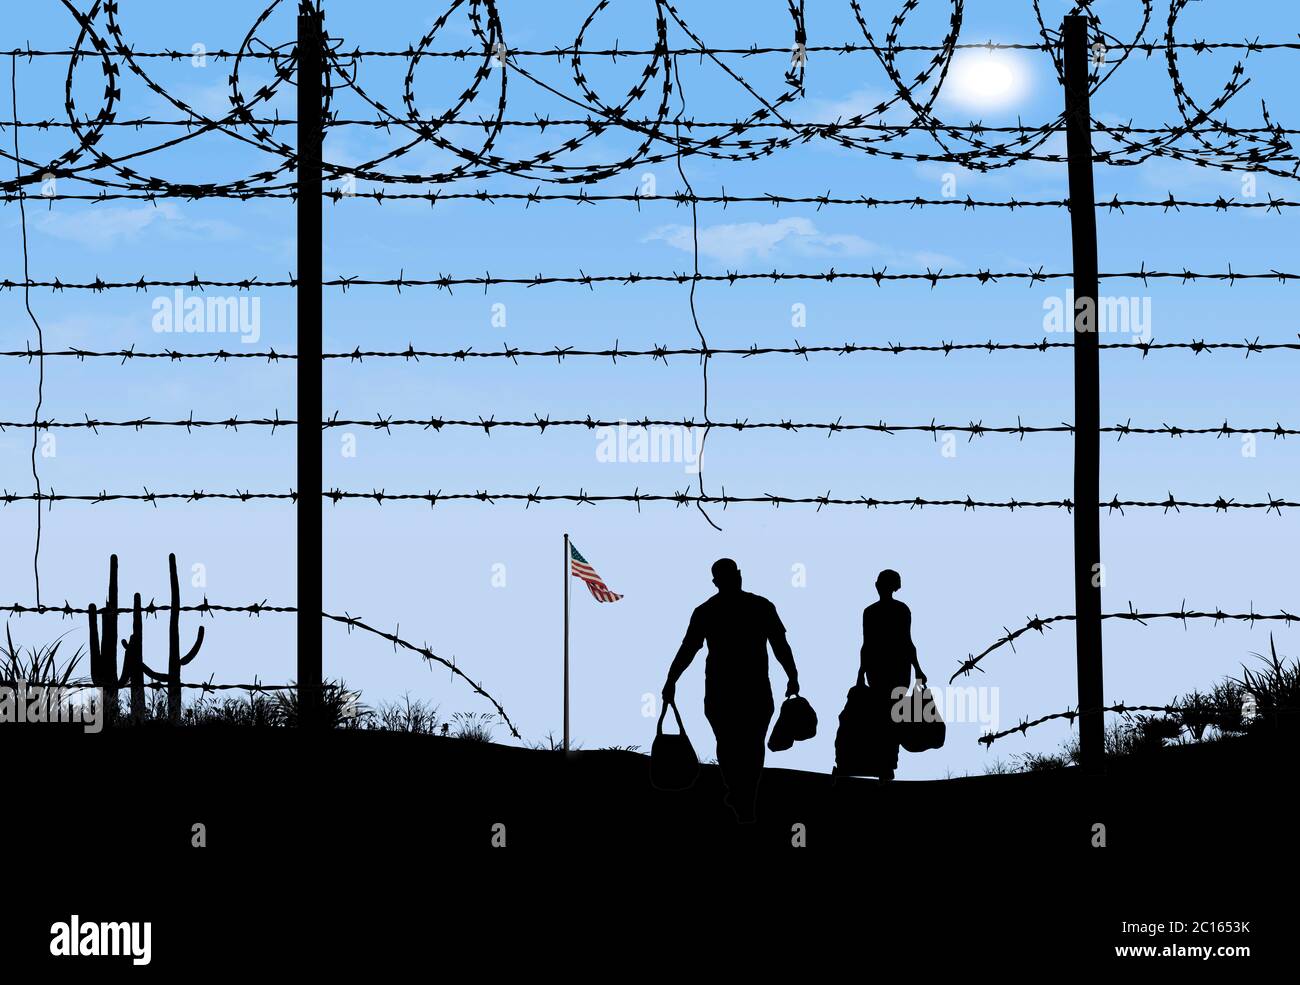 Un homme et une femme sont vus en silhouette après avoir enfreint une barrière frontalière à la frontière sud des États-Unis. Ils ont traversé un fil barbelé cassé f Banque D'Images